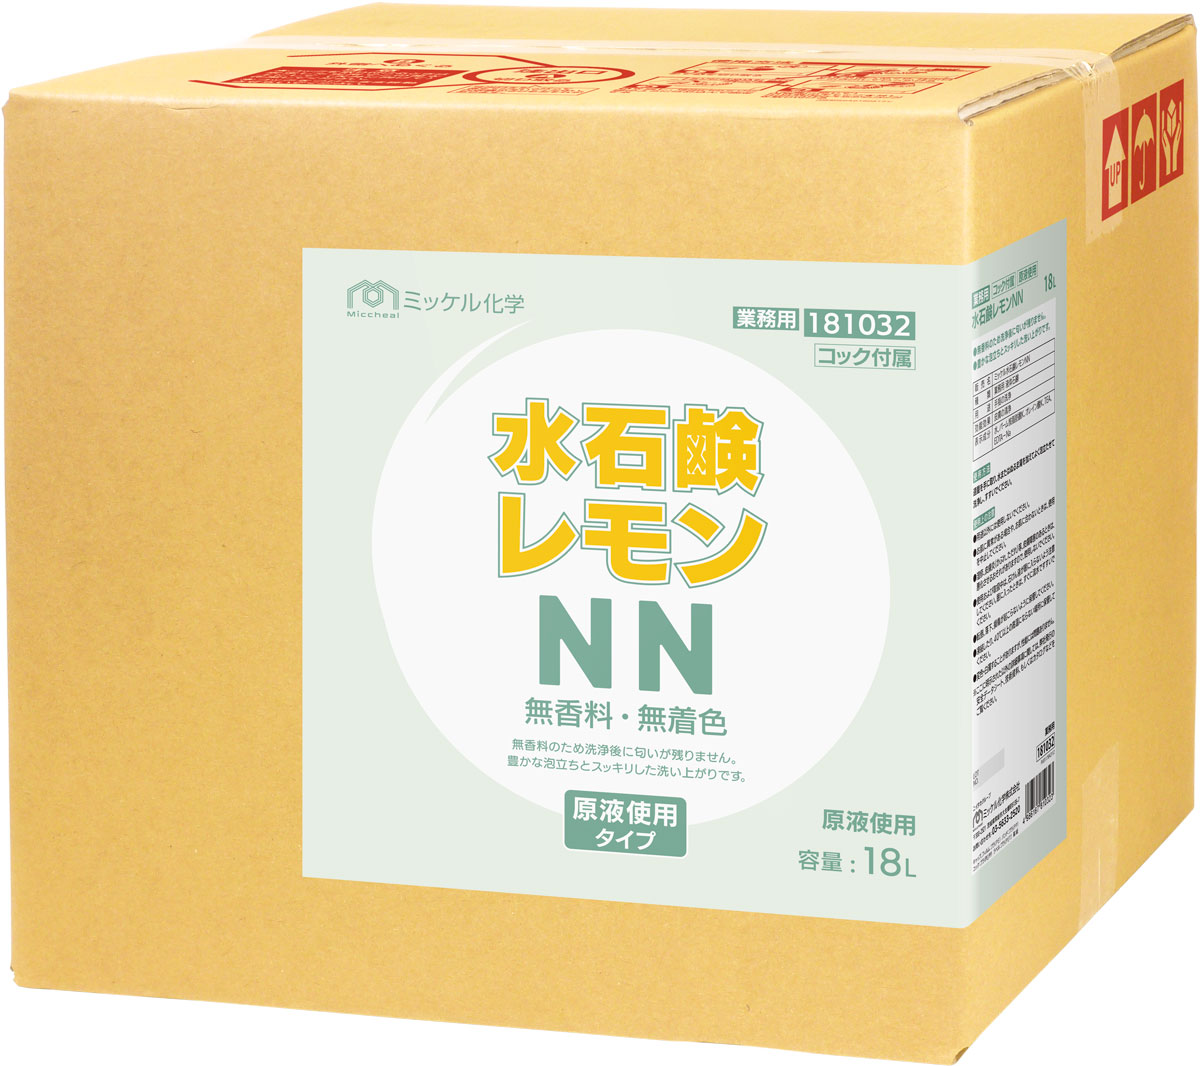 水石鹸レモンNN - ミッケル化学株式会社